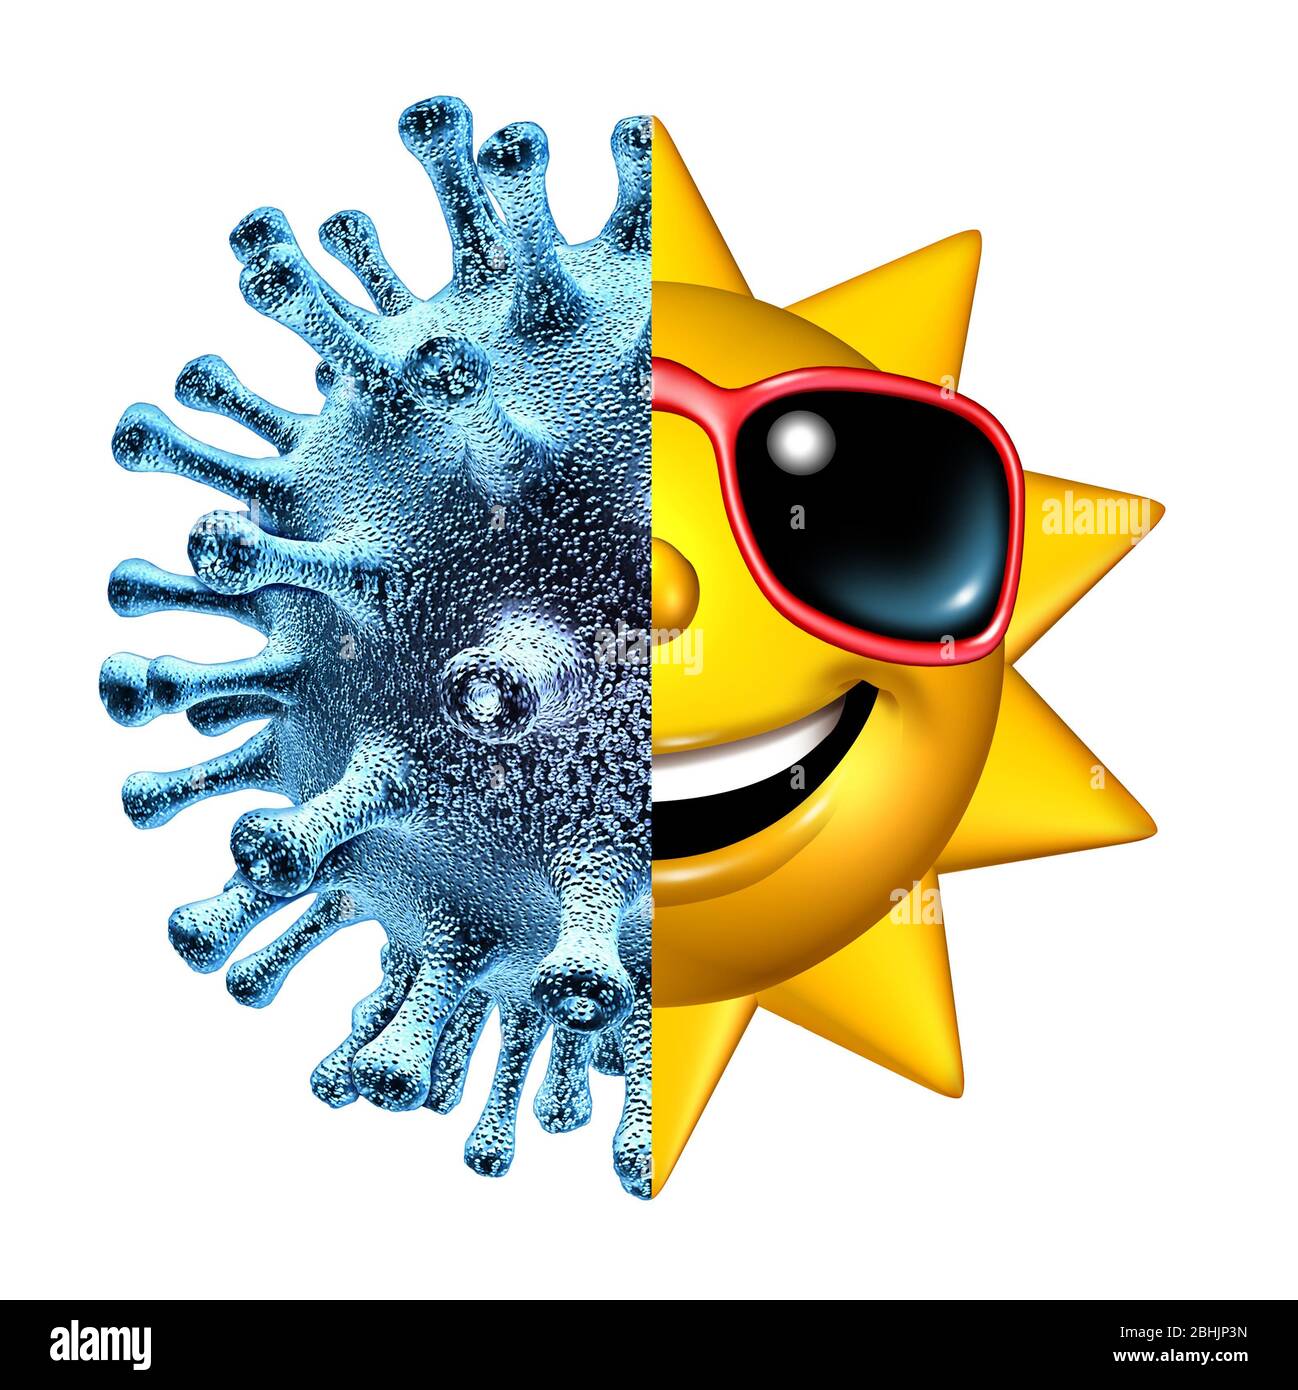 Krankheit und Genesung als Symbol für Gesundheit und Gesundheit zur Genesung von einer ansteckenden Krankheit wie Coronavirus oder Covid-19 und Influenza-Virus-Infektion. Stockfoto